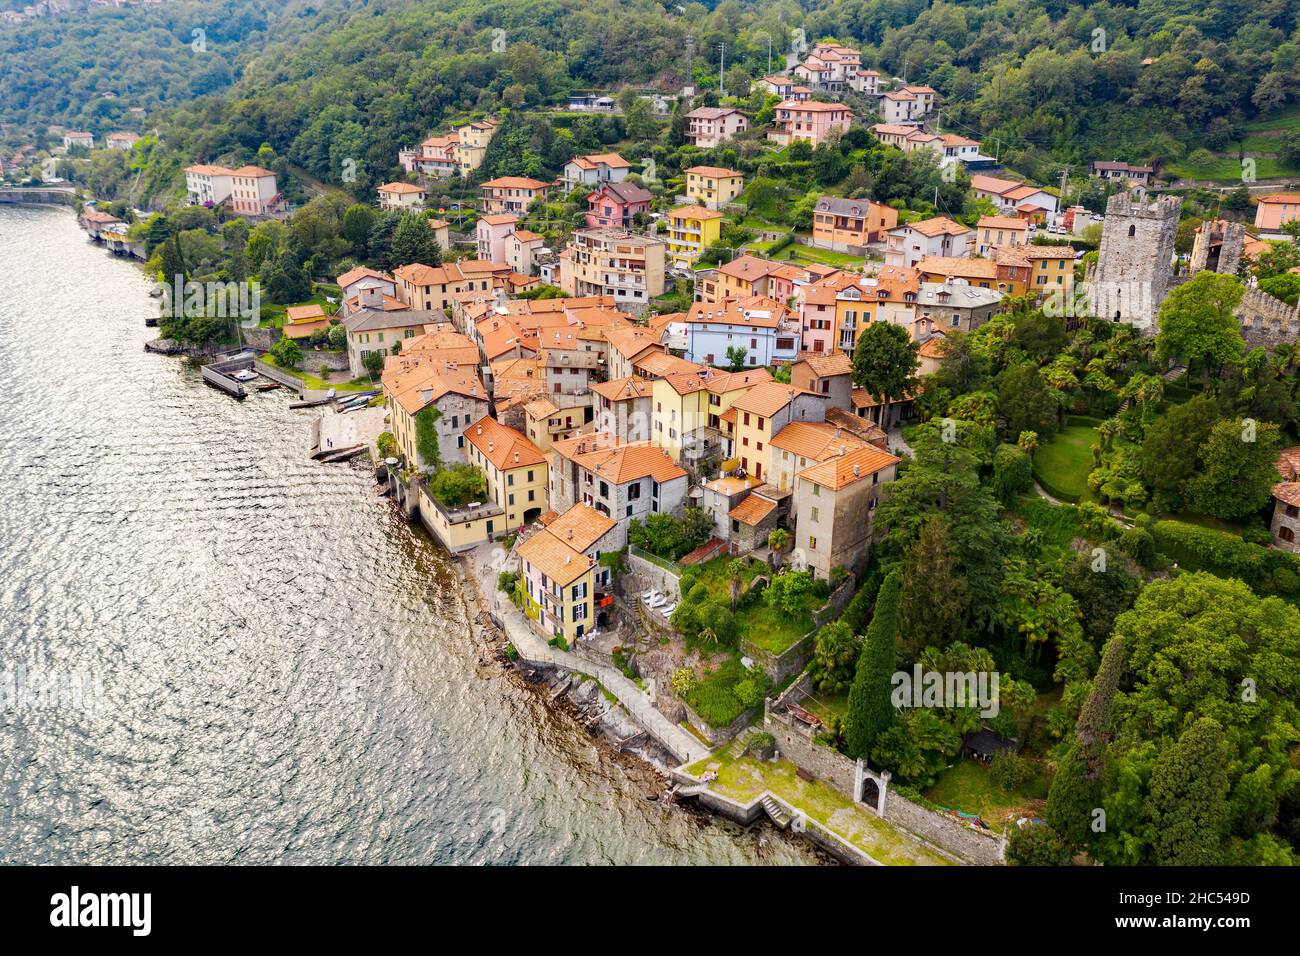 Lake Como (IT), Santa Maria Rezzonico, aerial view Stock Photo